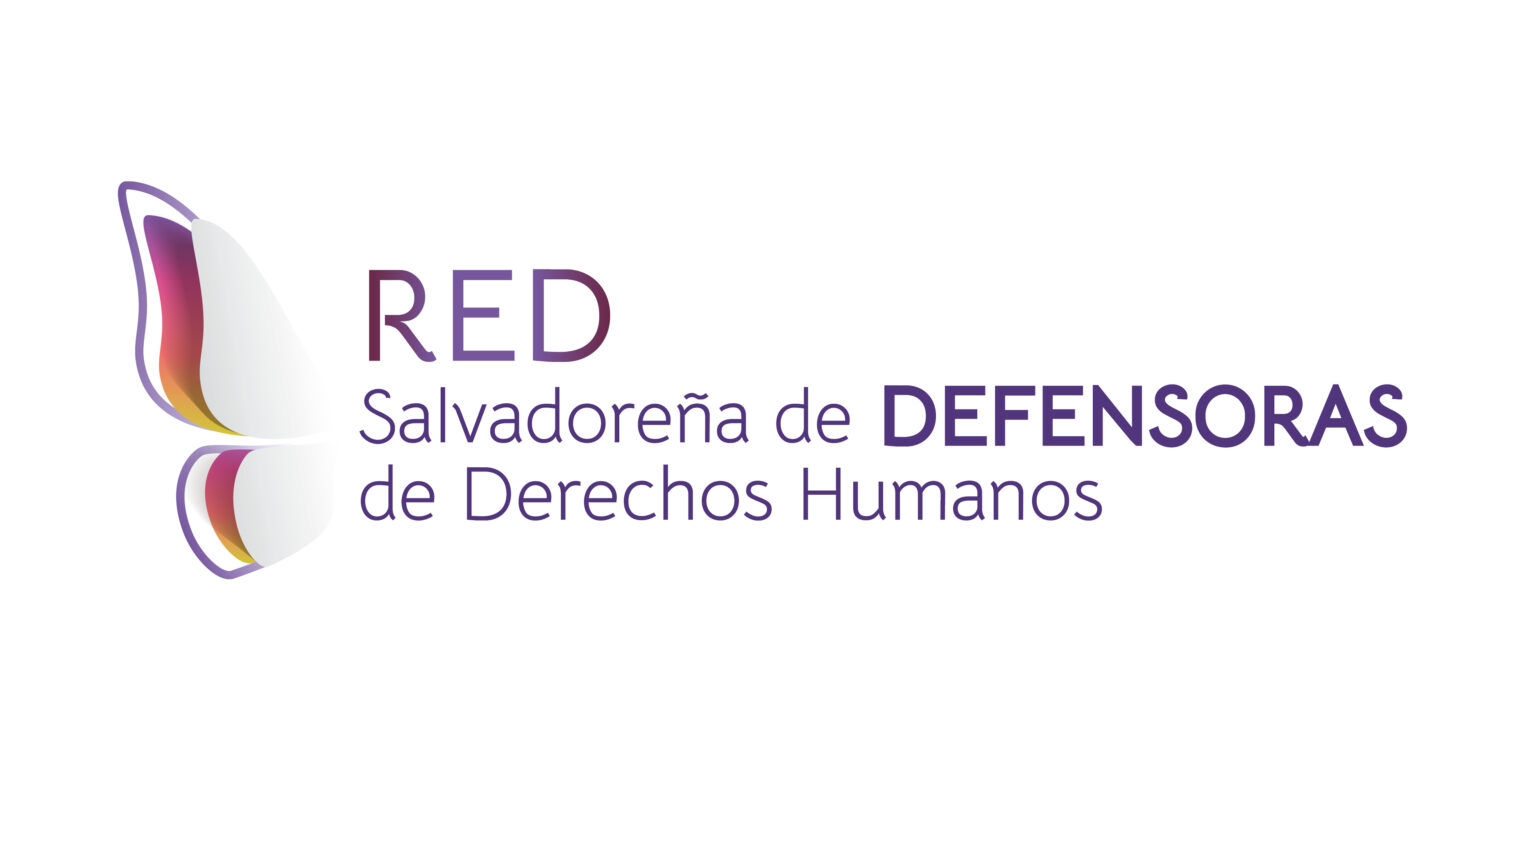 RED-SALVADORENA-PORTADA-1536x865.jpg